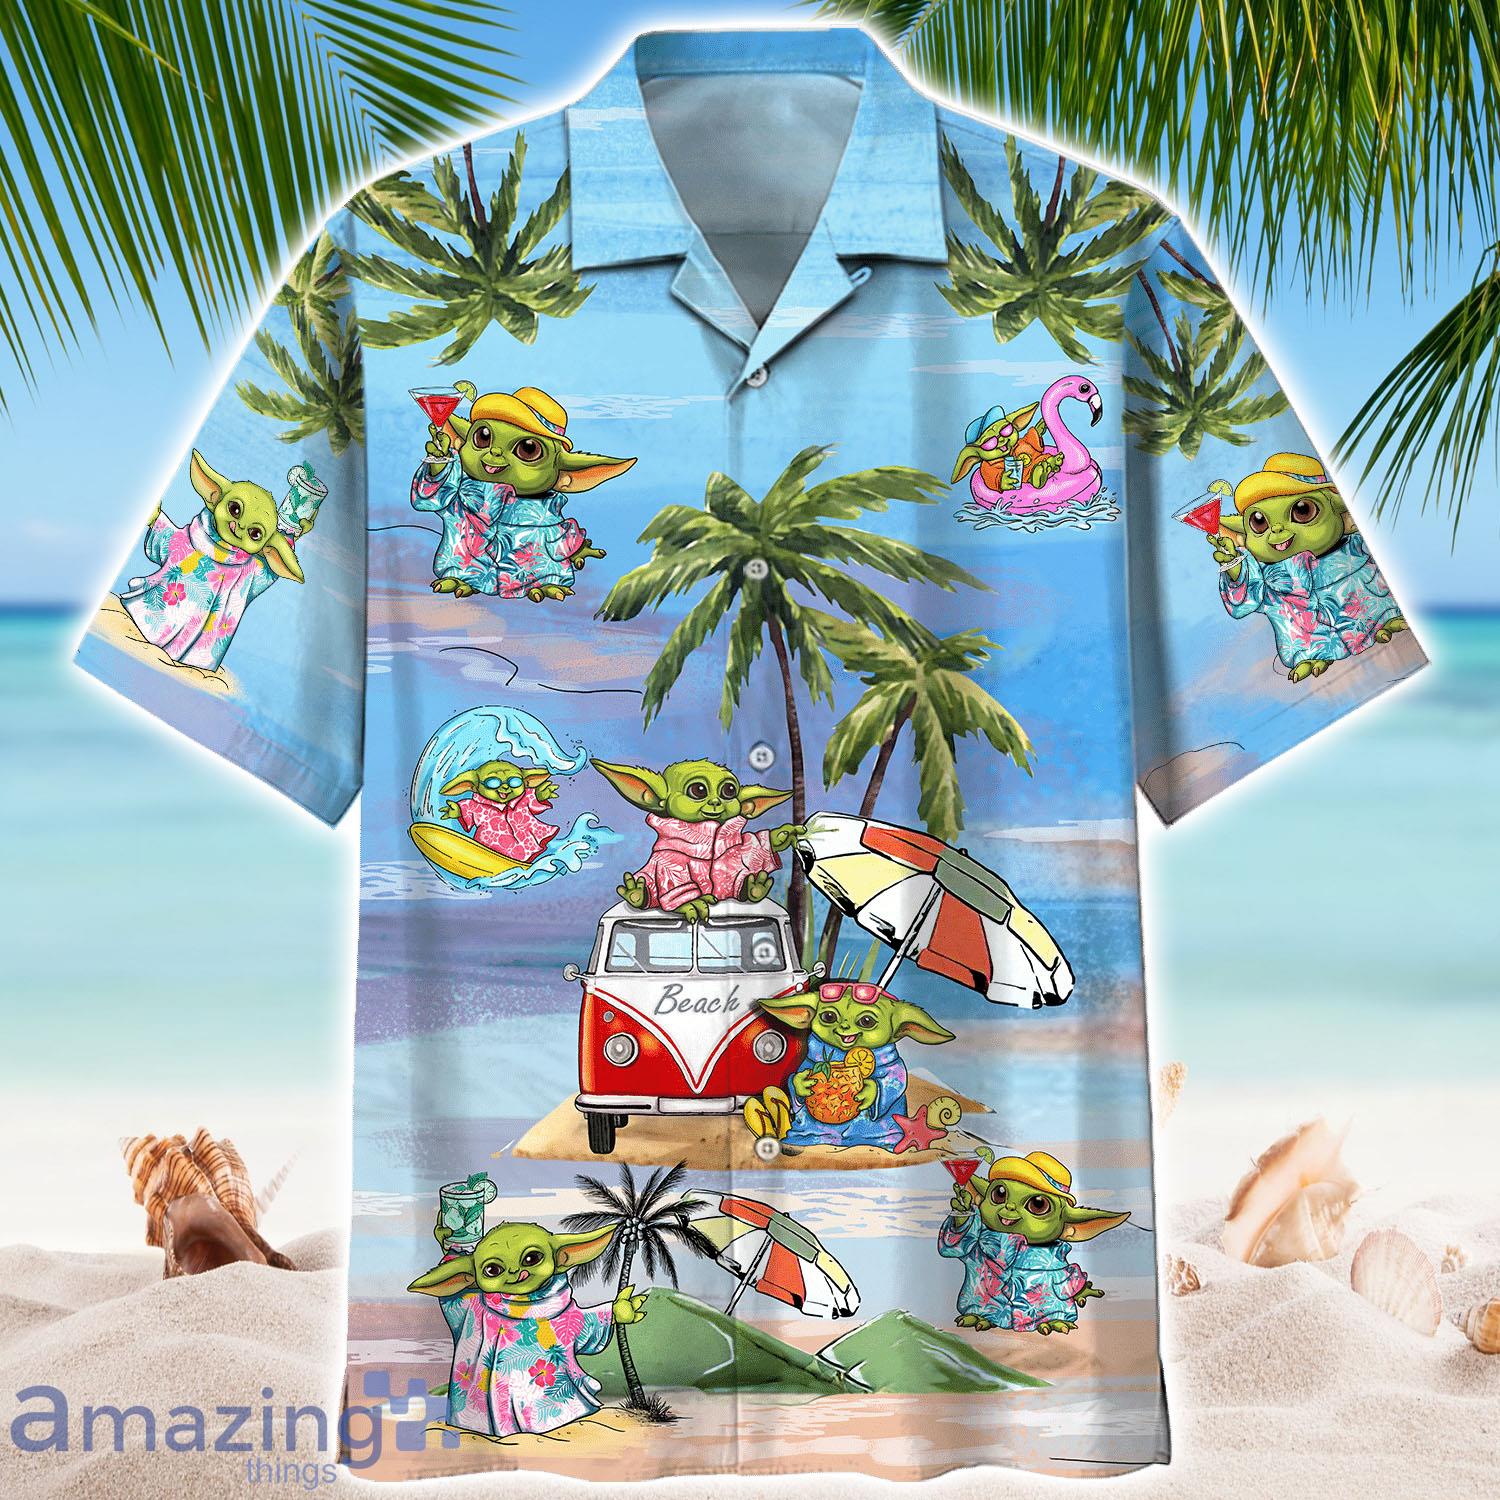 Baby Yoda Summer Time Hawaiian Shirt - Baby Yoda Summer Time Hawaiian Shirt